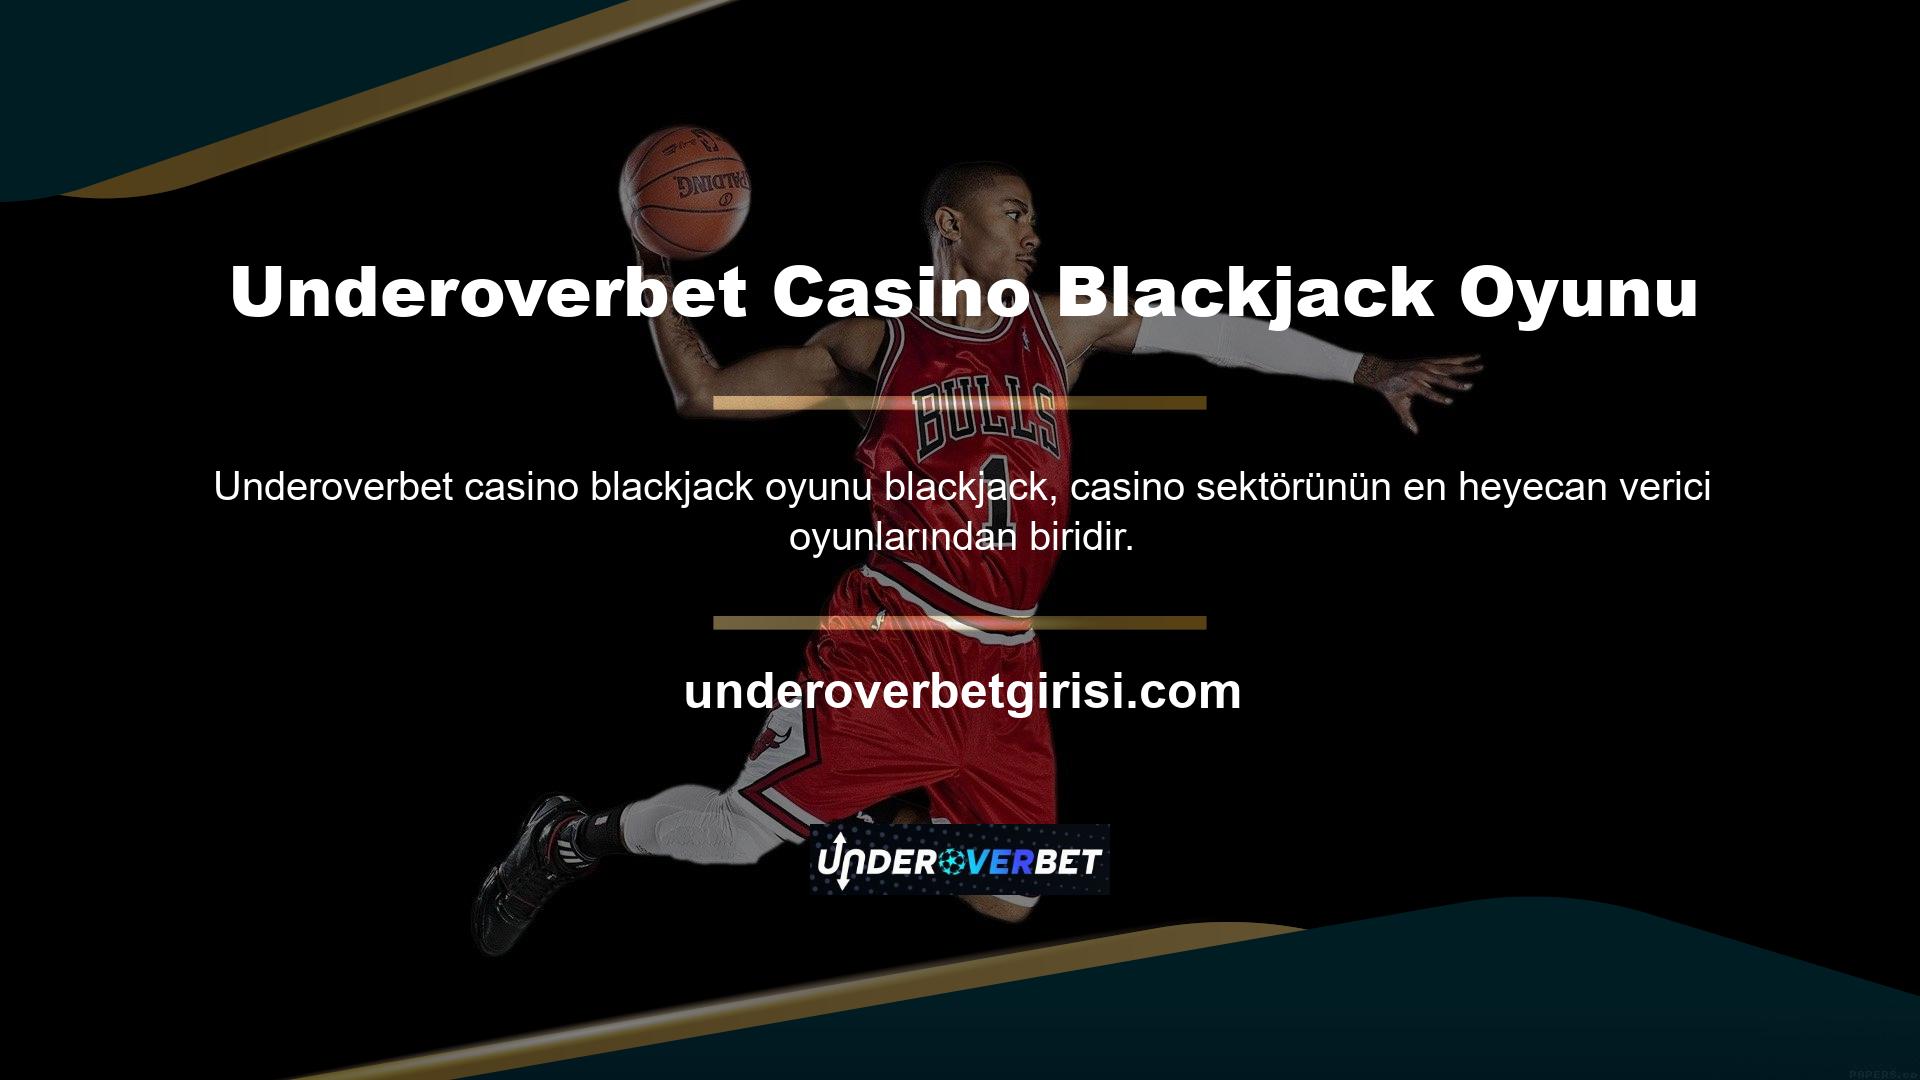 Underoverbet çok çeşitli blackjack ve ilginç casino seçenekleri sunmaktadır